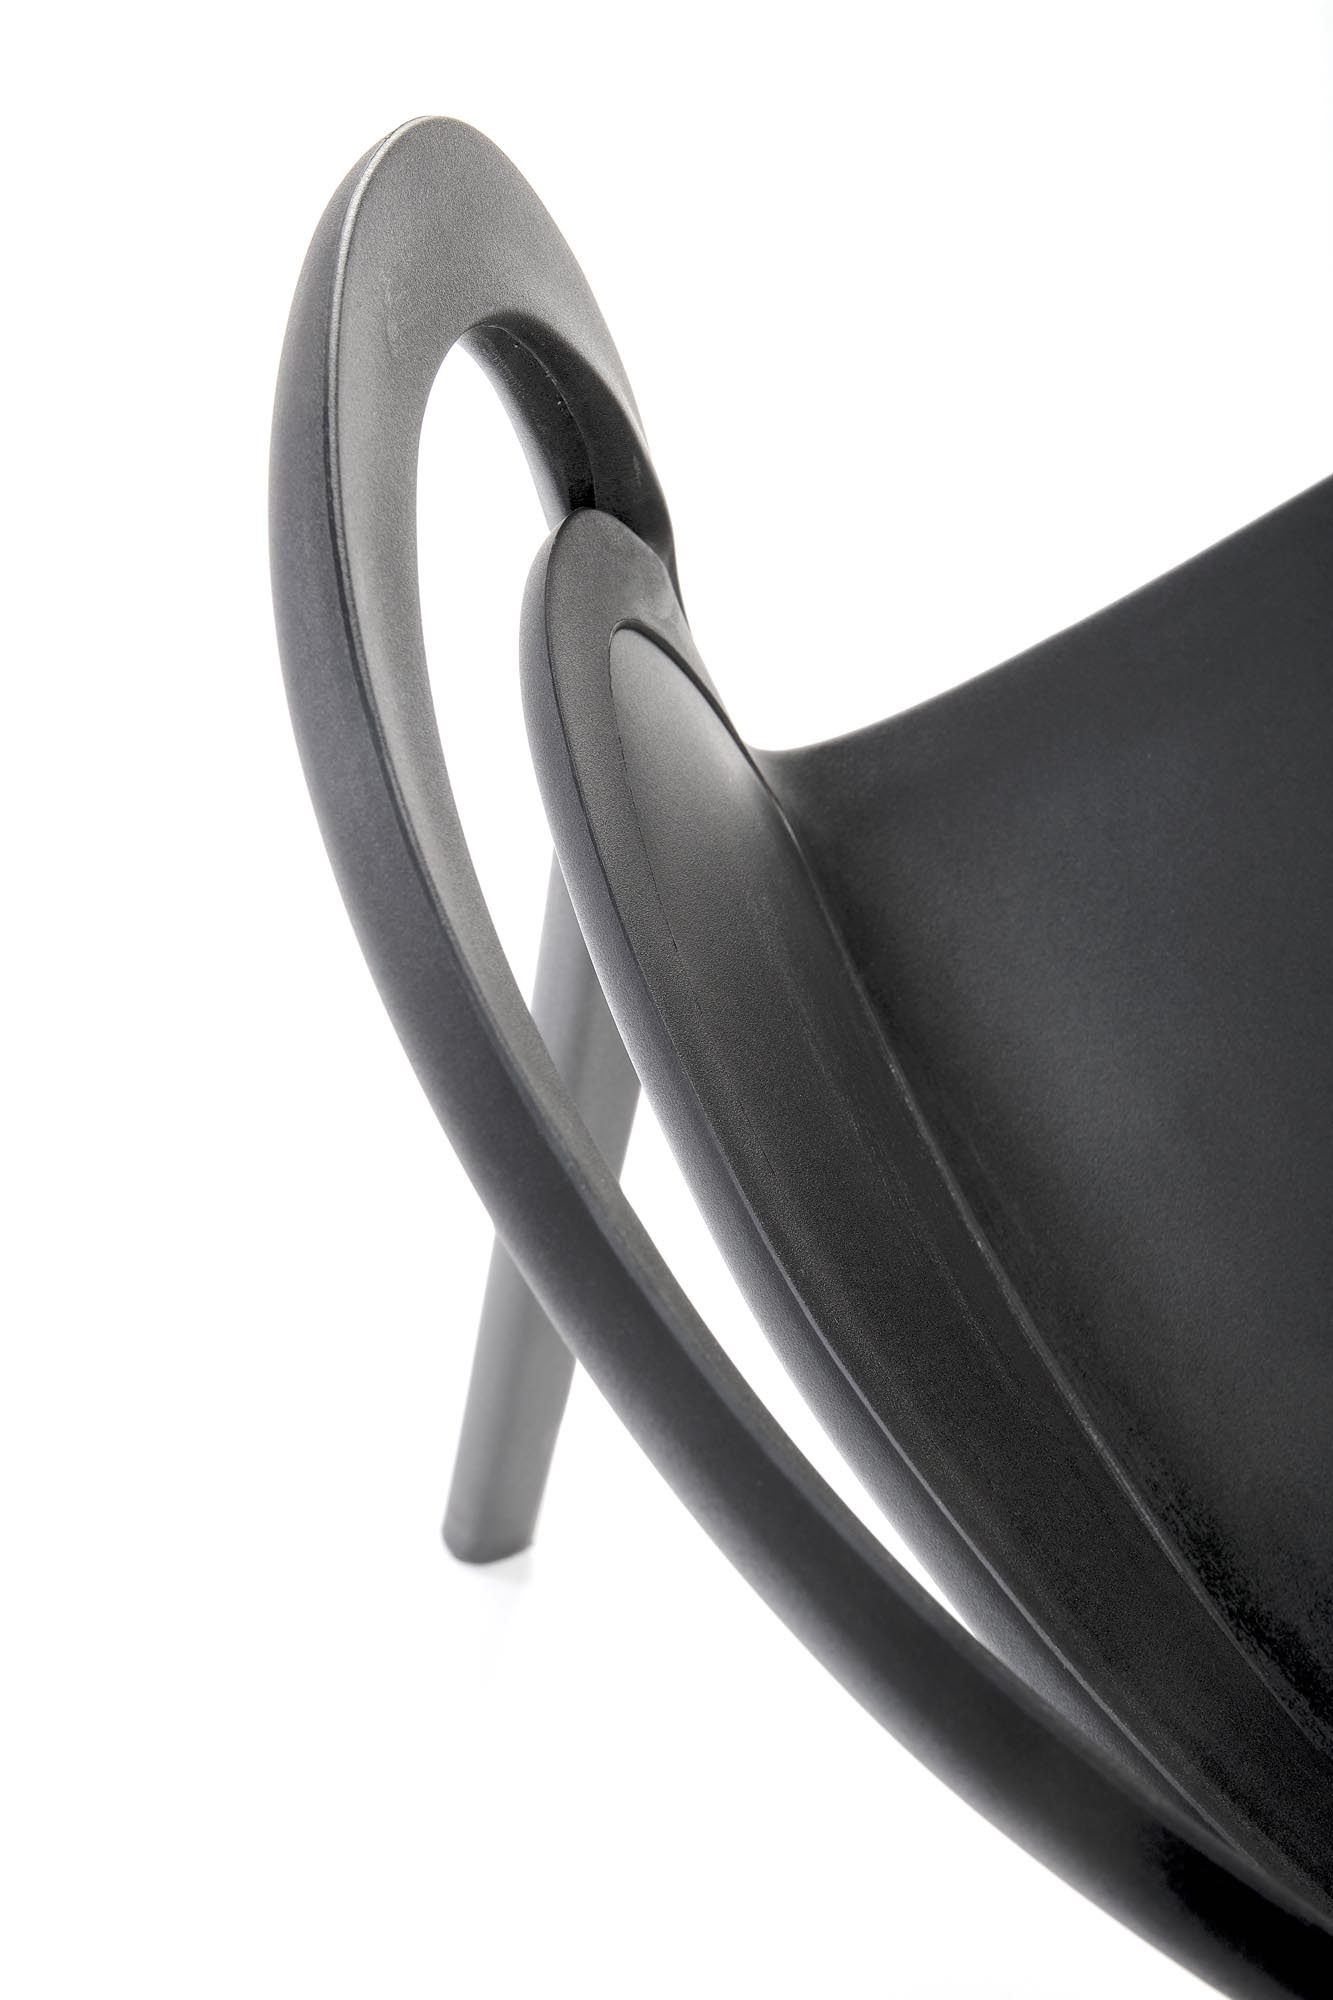 Krzesło z tworzywa sztucznego K490 - czarny krzesło z tworzywa sztucznego k490 - czarny